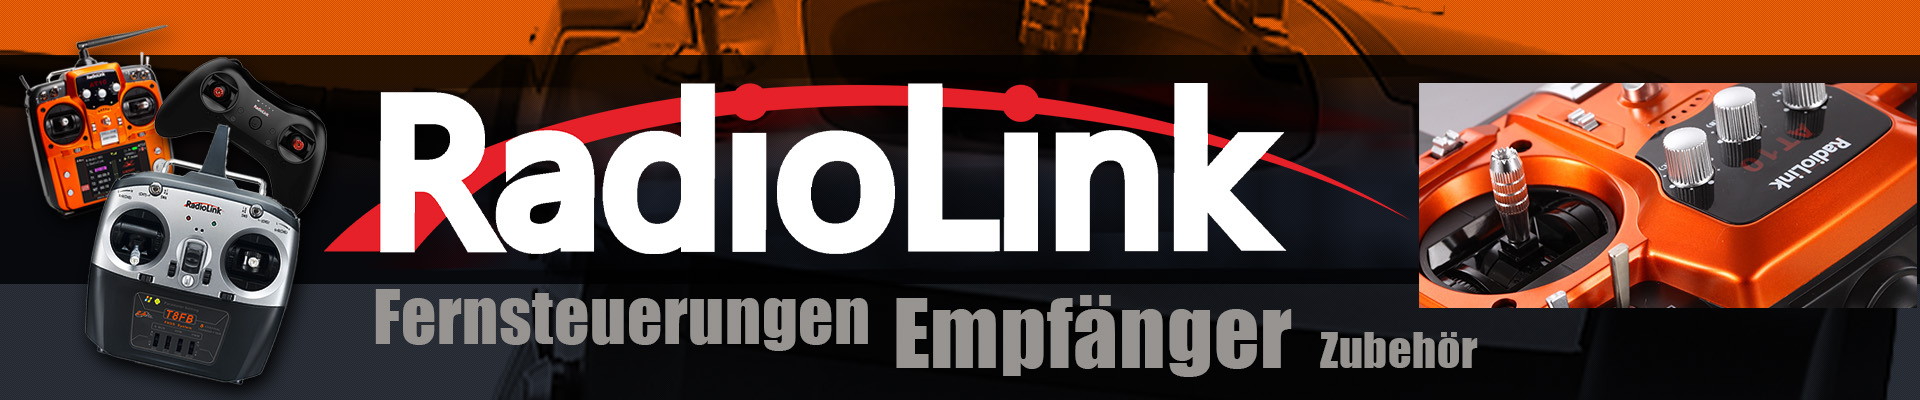 Main_Banner_Fernsteuerung_Radiolink_1920x400